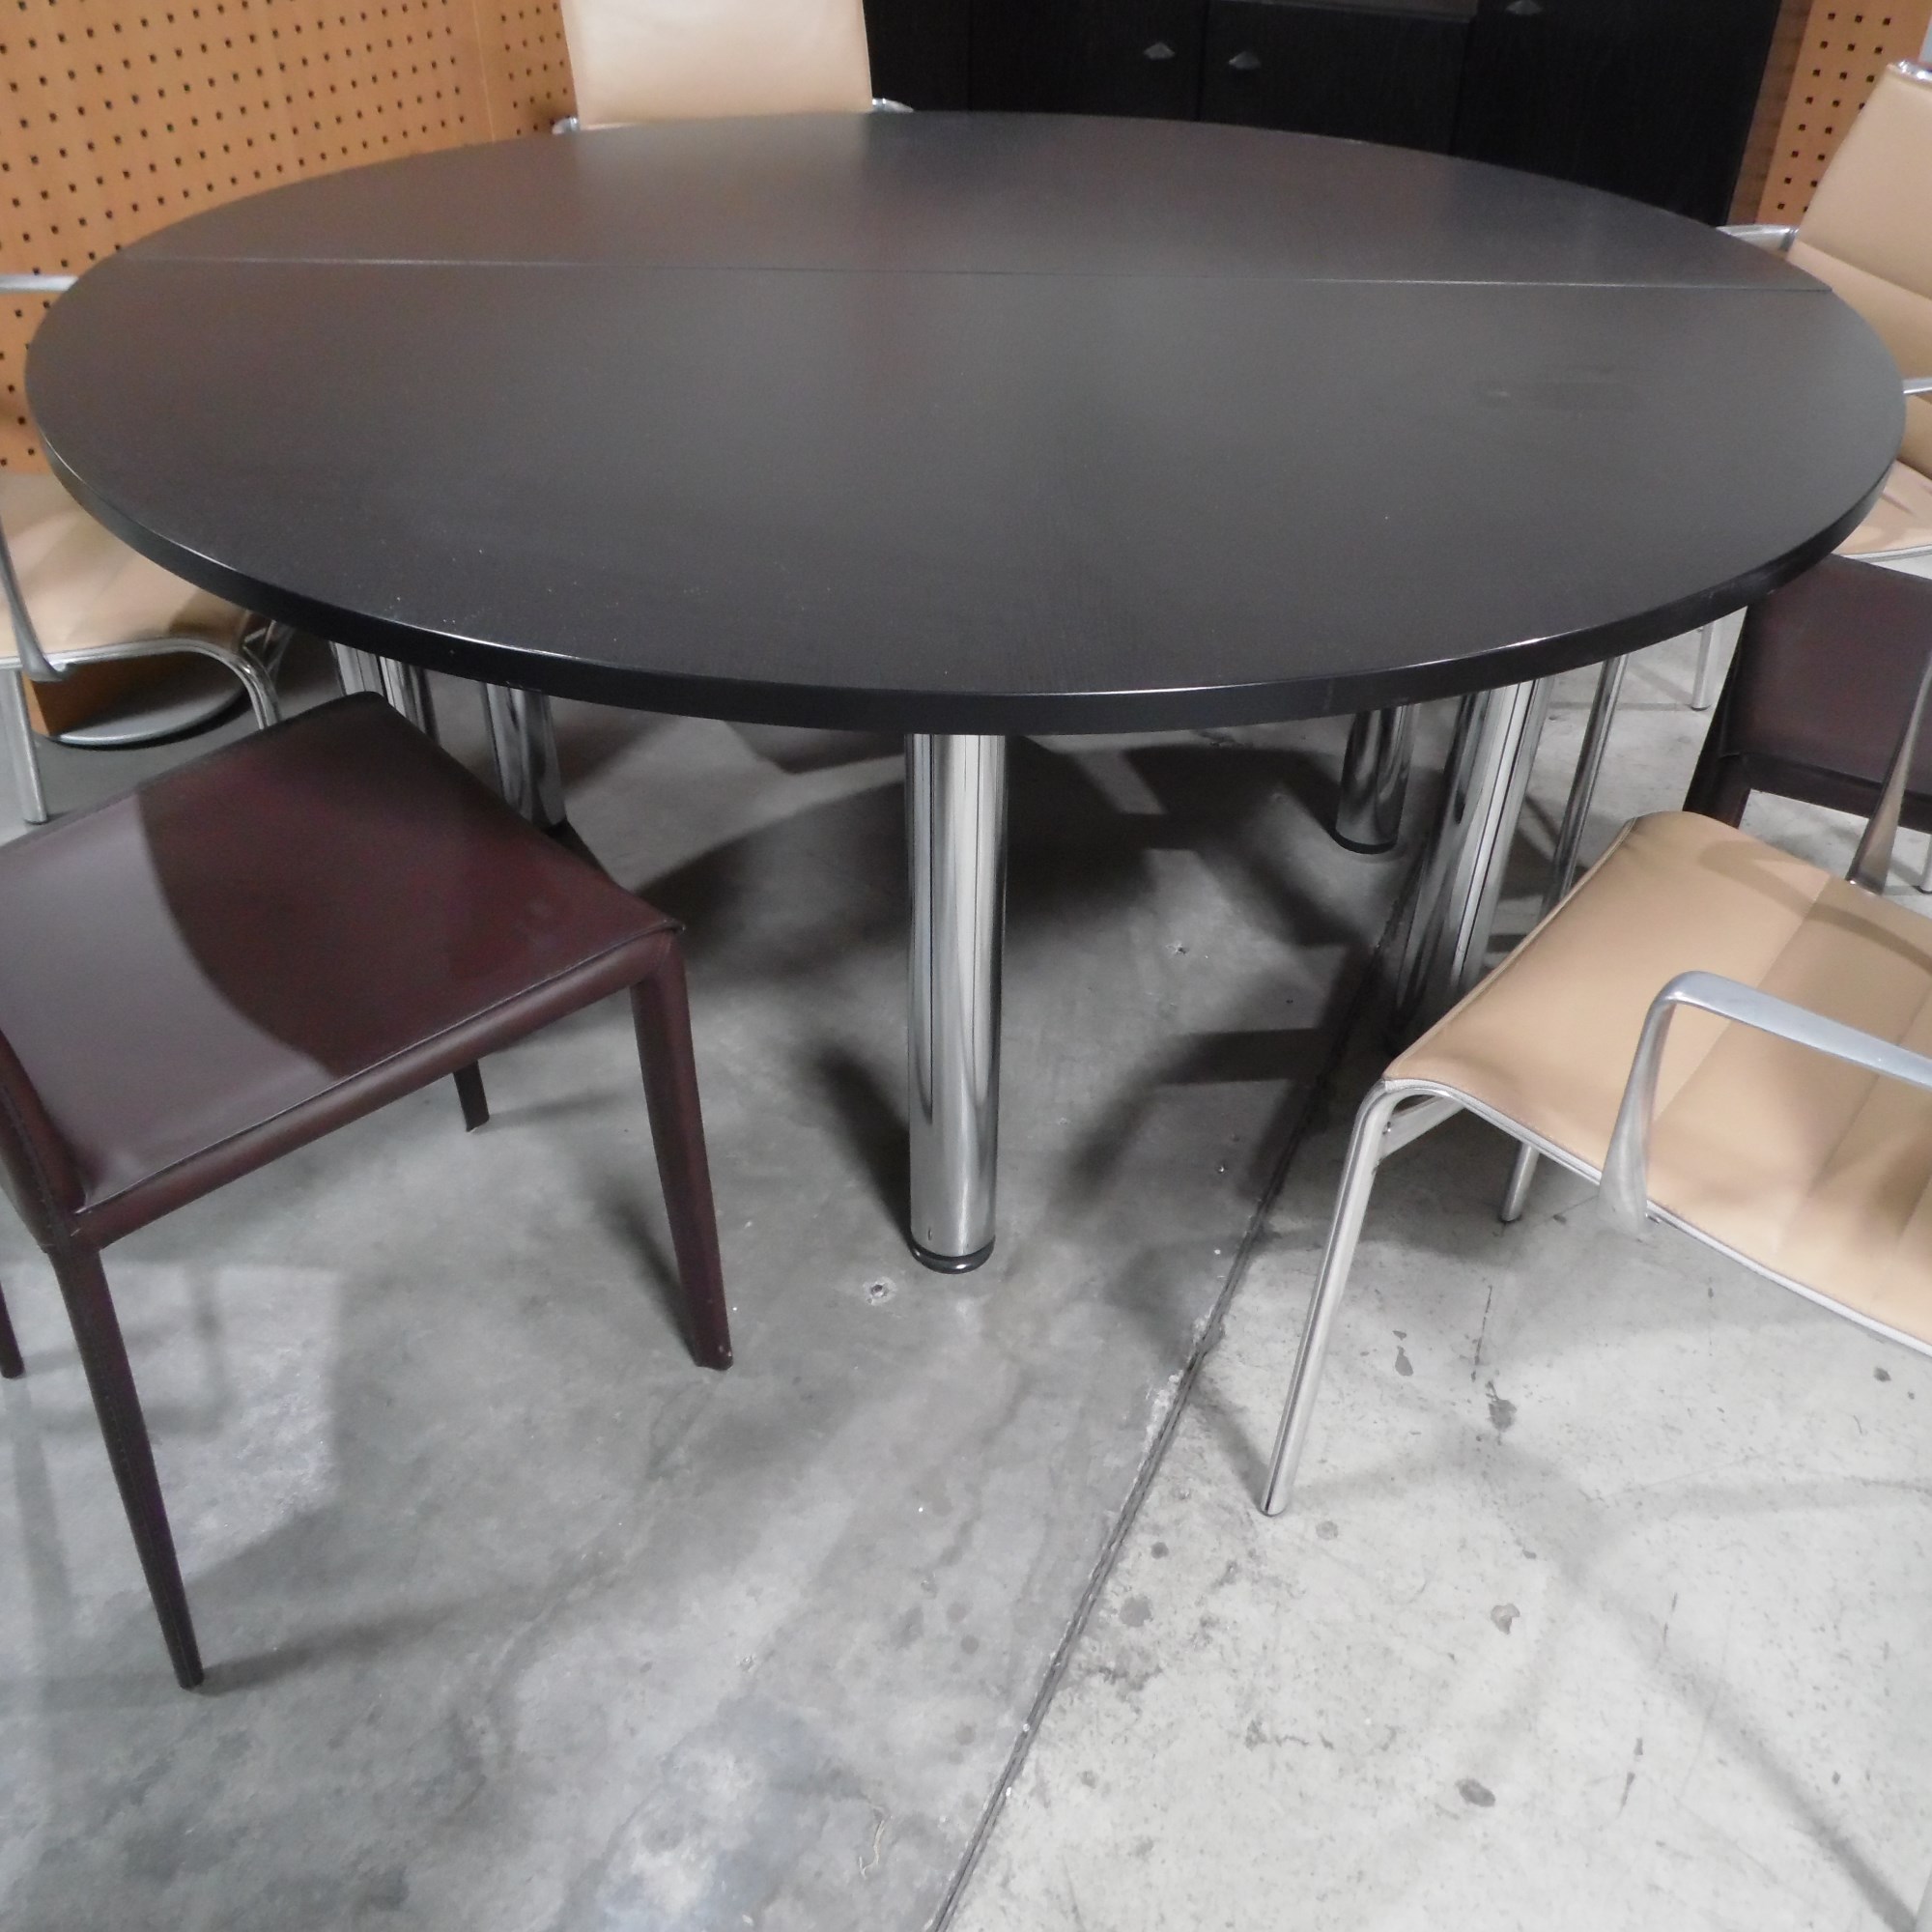 Konferenztisch -  Ø 160 cm  in schwarzer eiche - Gestell chrom